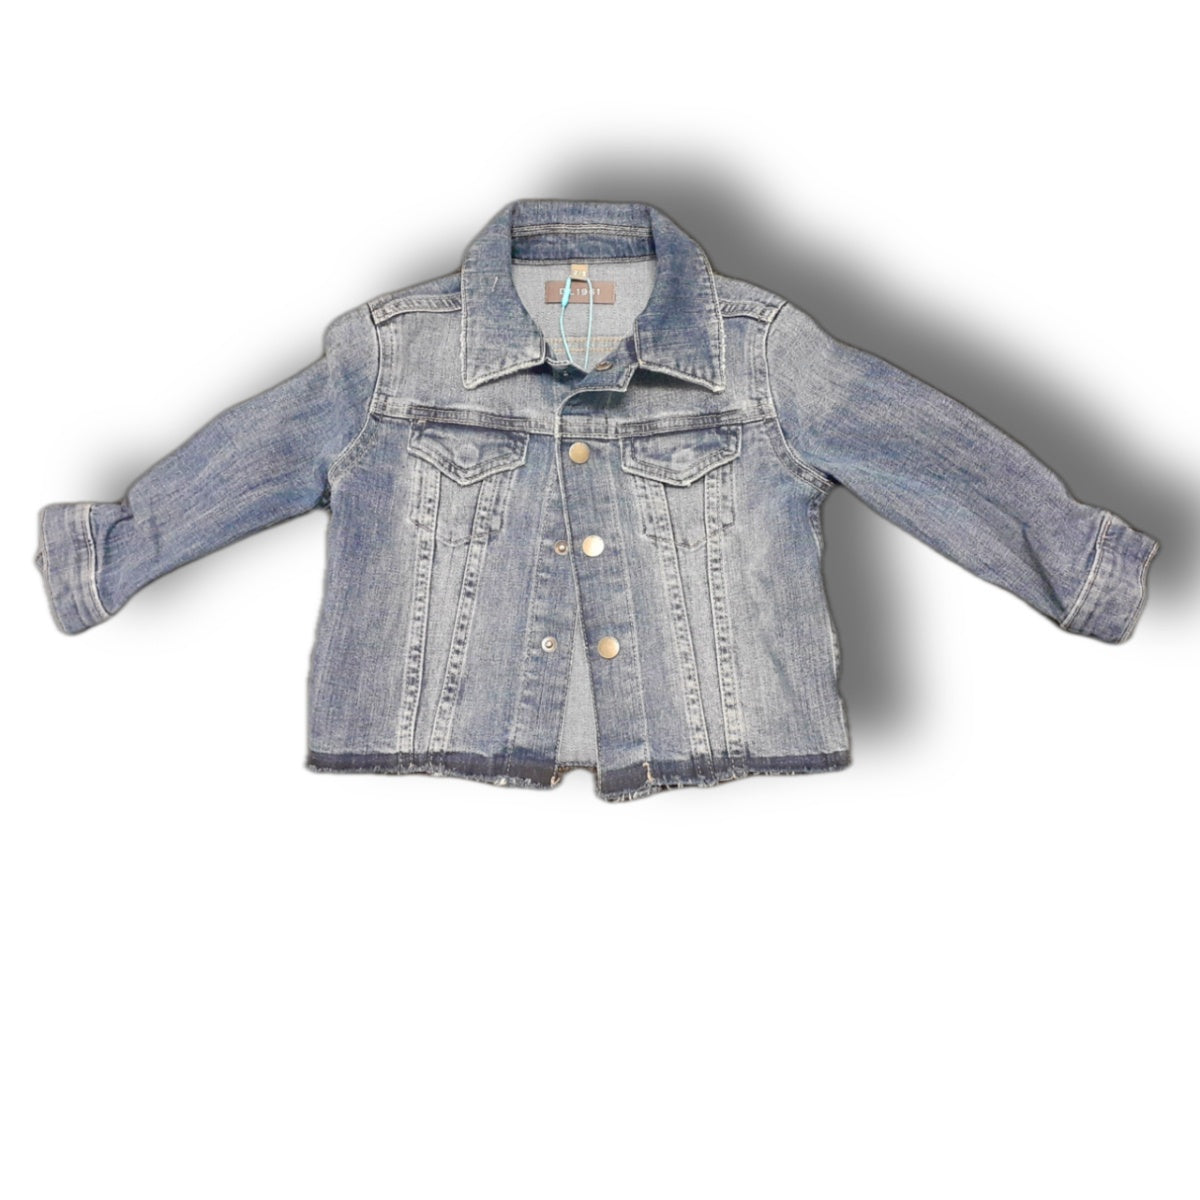 DL 1961 girls Blue Jean jacket